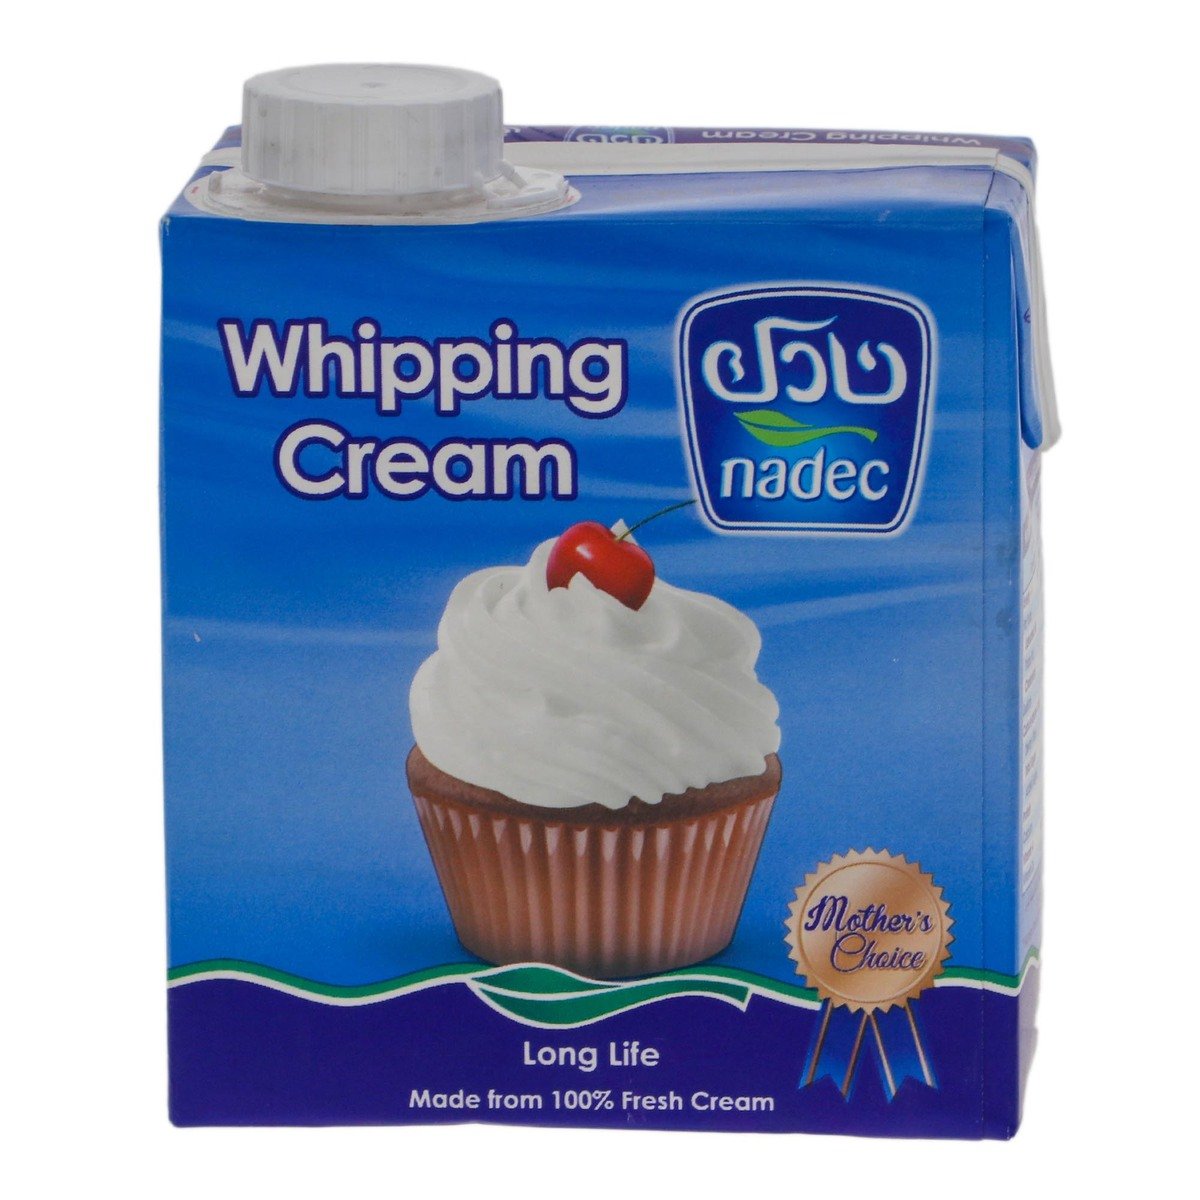 اشتري قم بشراء نادك كريمة خفق طويلة الأمد 500 مل Online at Best Price من الموقع - من لولو هايبر ماركت Whipping Cream في السعودية